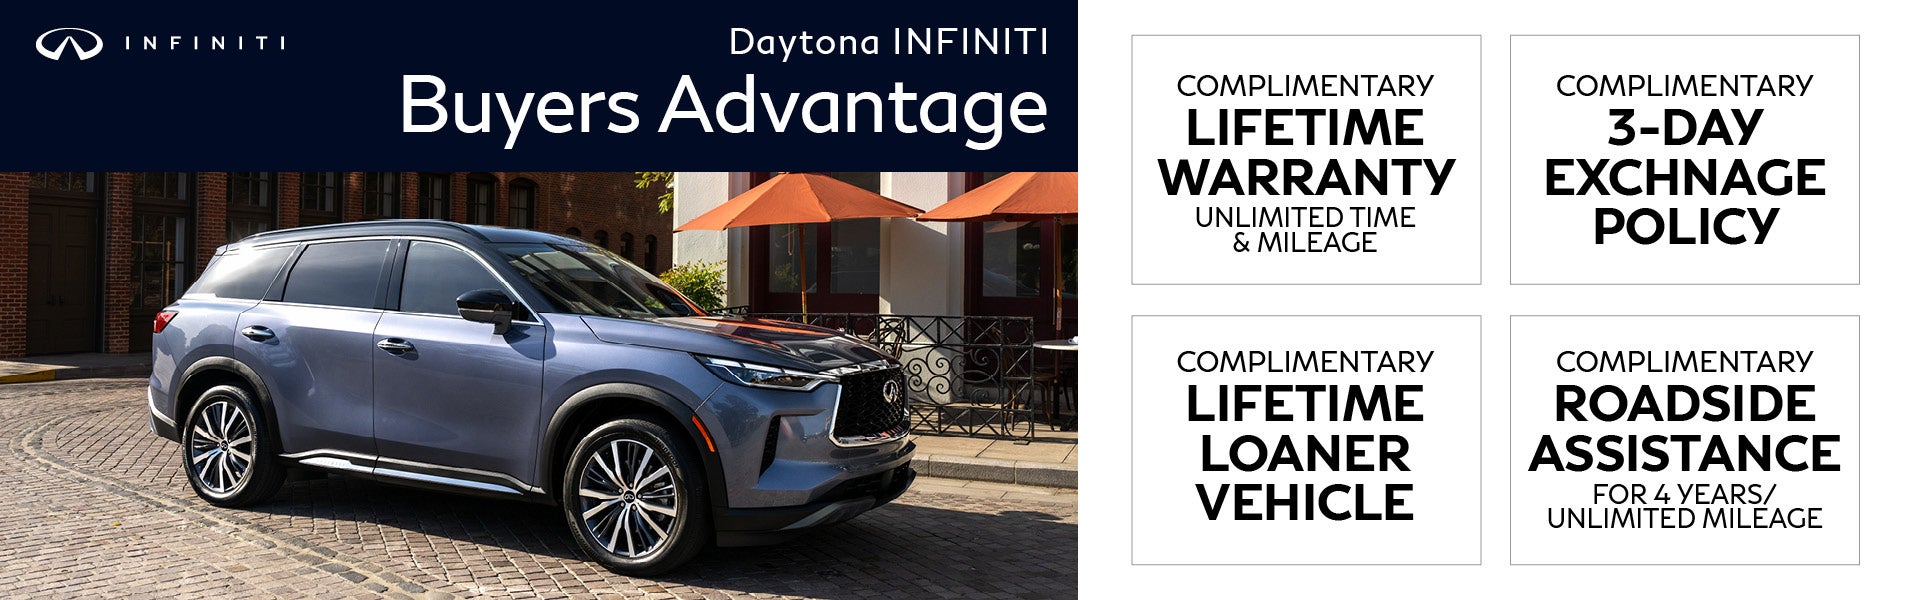 Daytona INFINITI Buyers Advantage